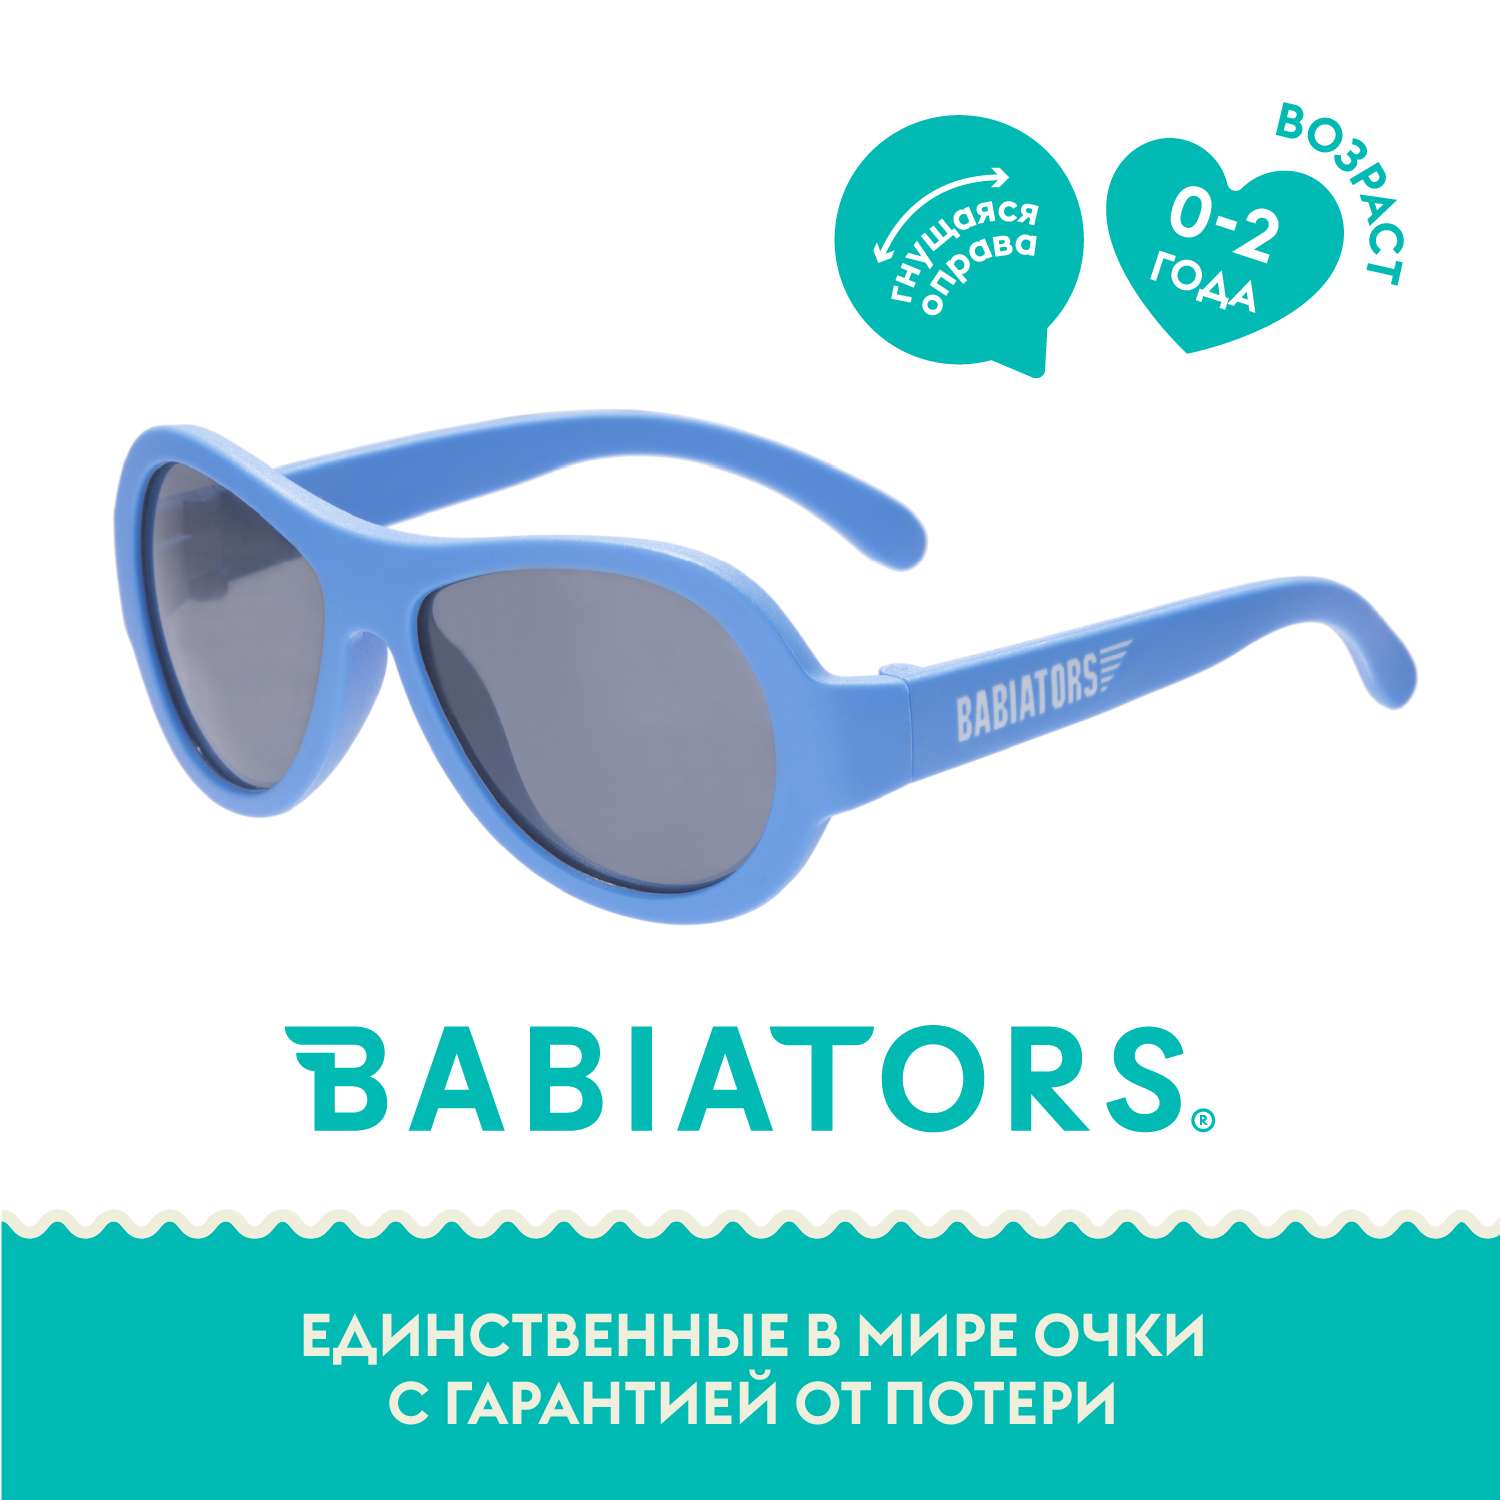 Солнцезащитные очки Babiators Aviator Настоящий синий 0-2 BAB-030 - фото 1